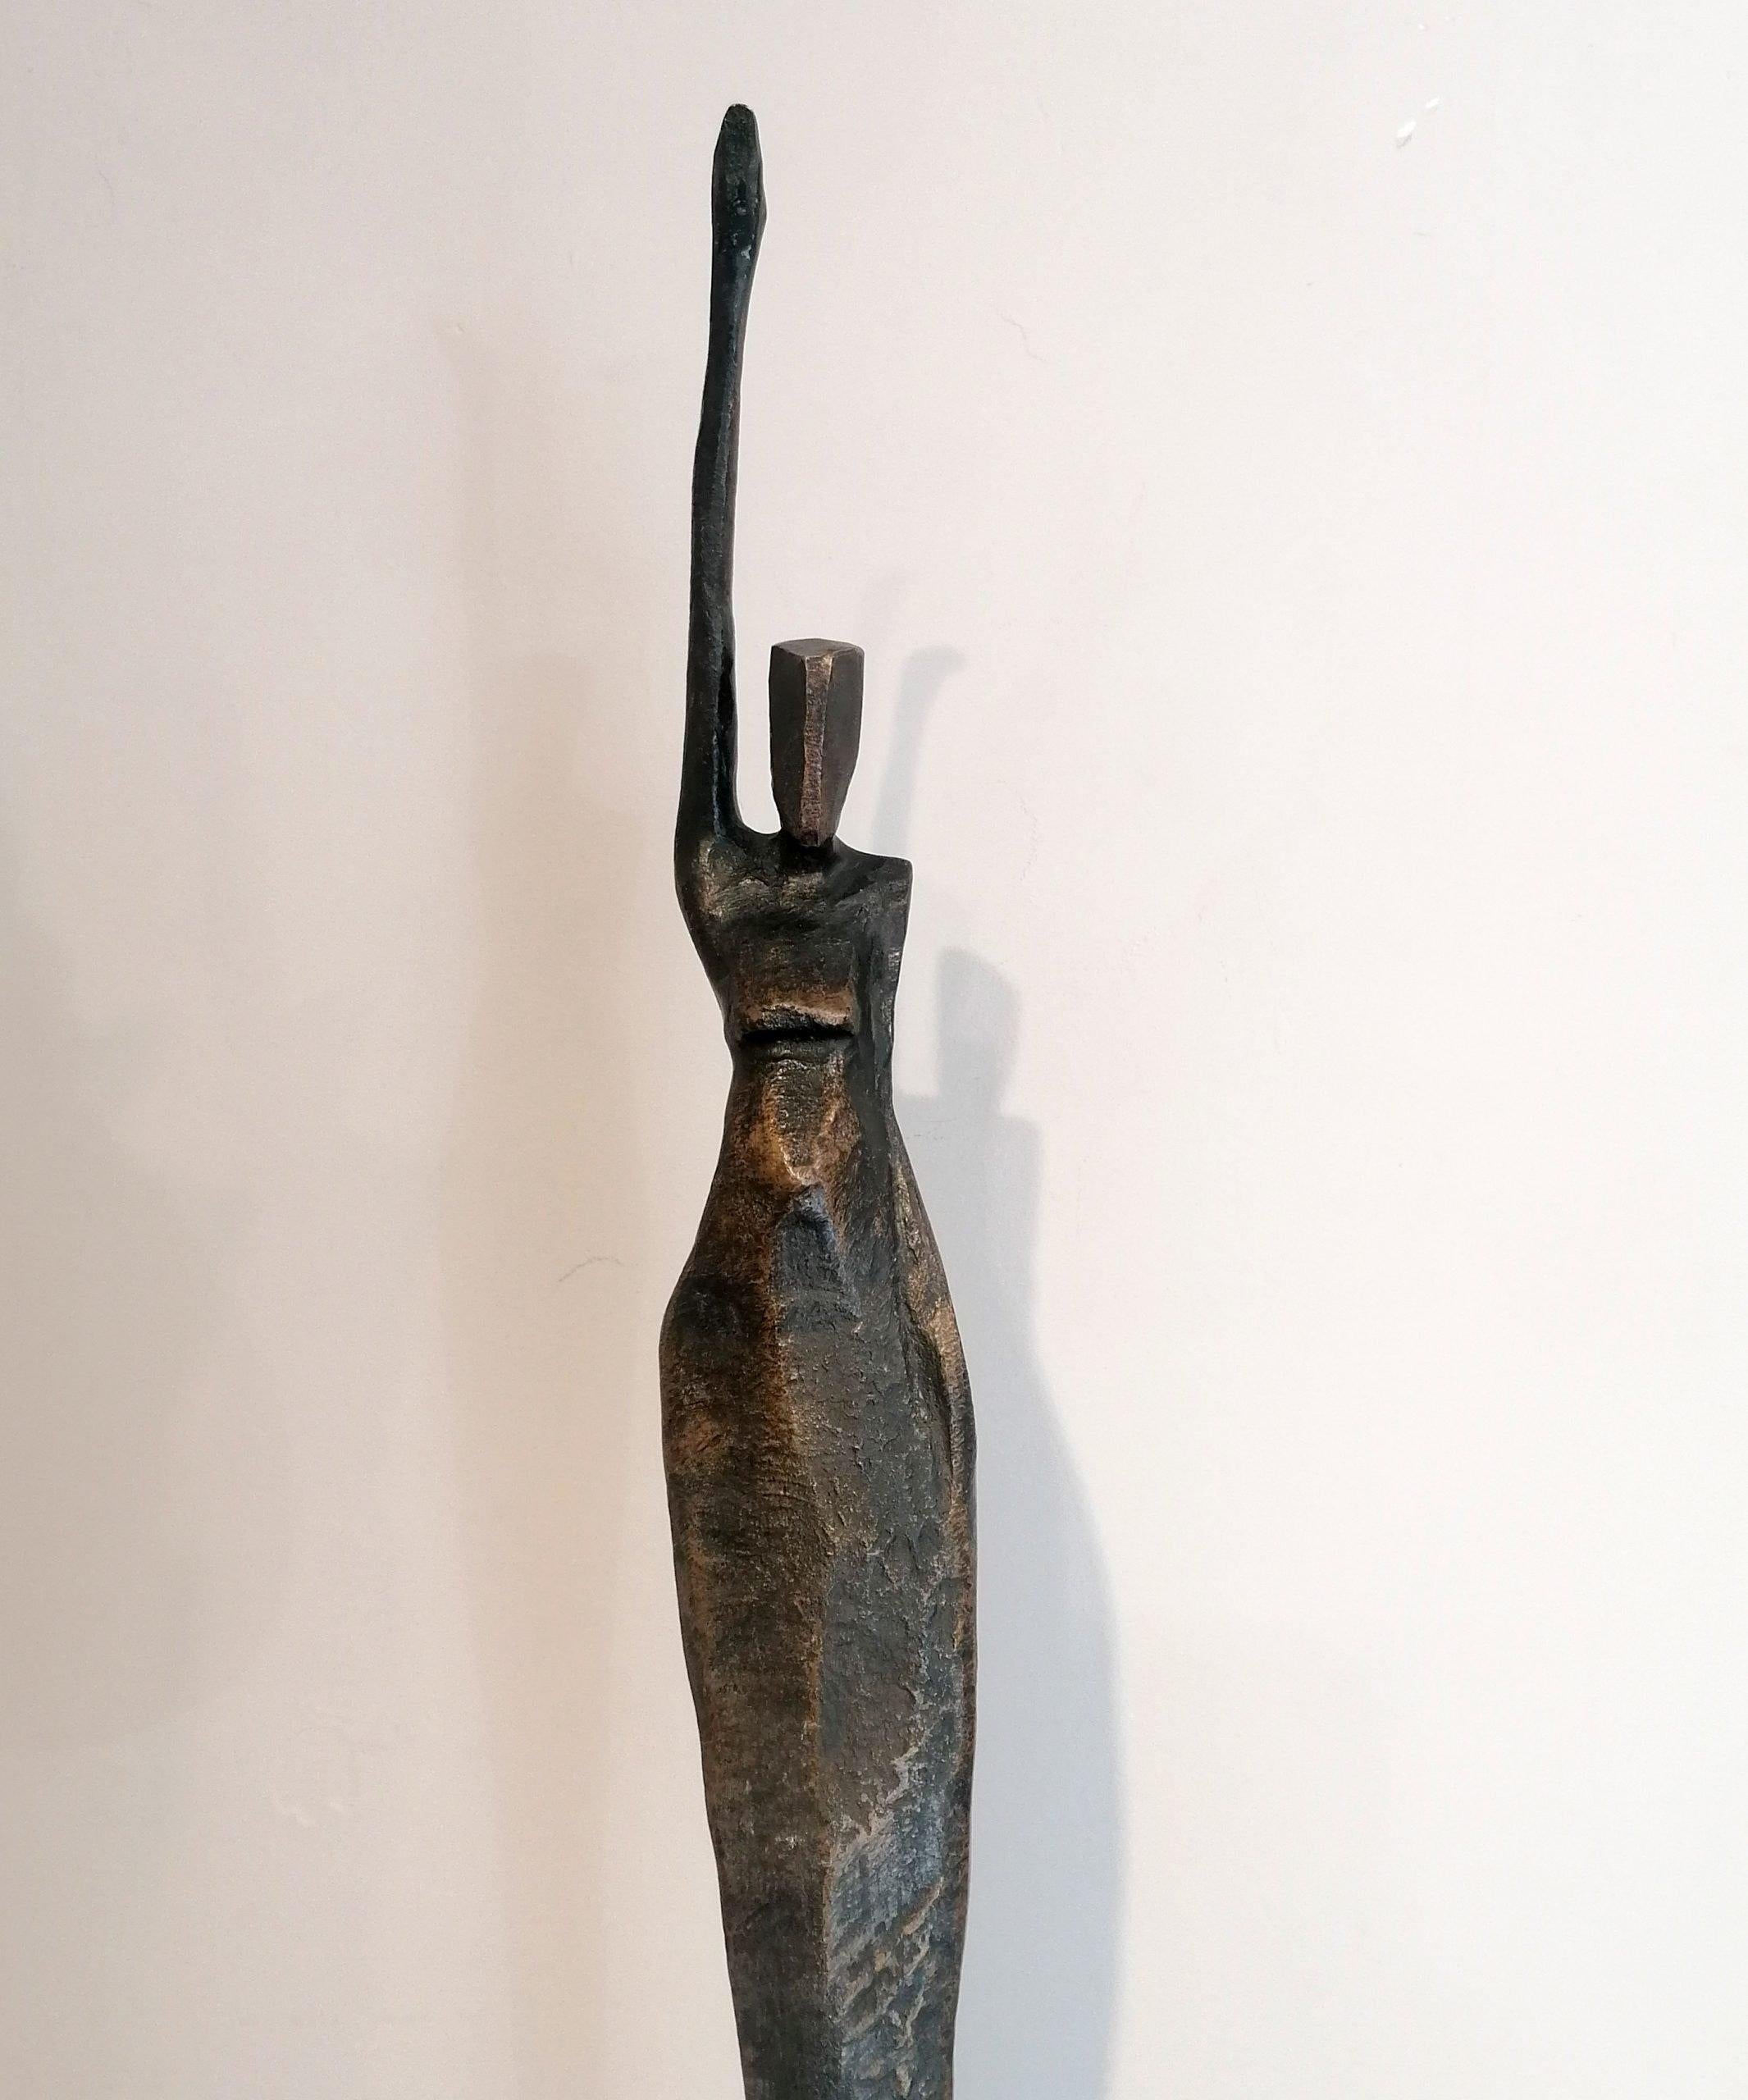 Madeleine par Nando Kallweit.  
Sculpture en bronze, édition de 7

Dimensions : 153cm de hauteur